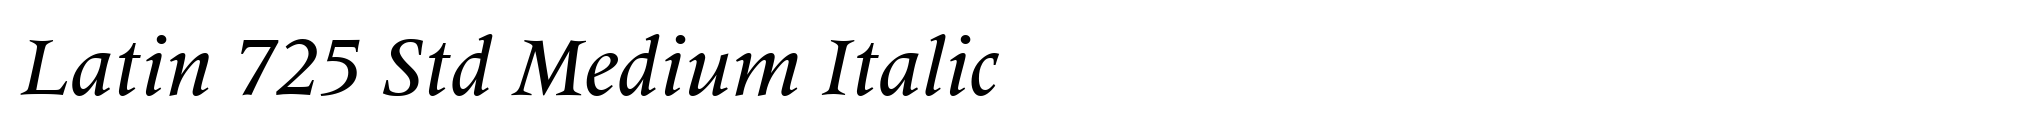 Latin 725 Std Medium Italic image